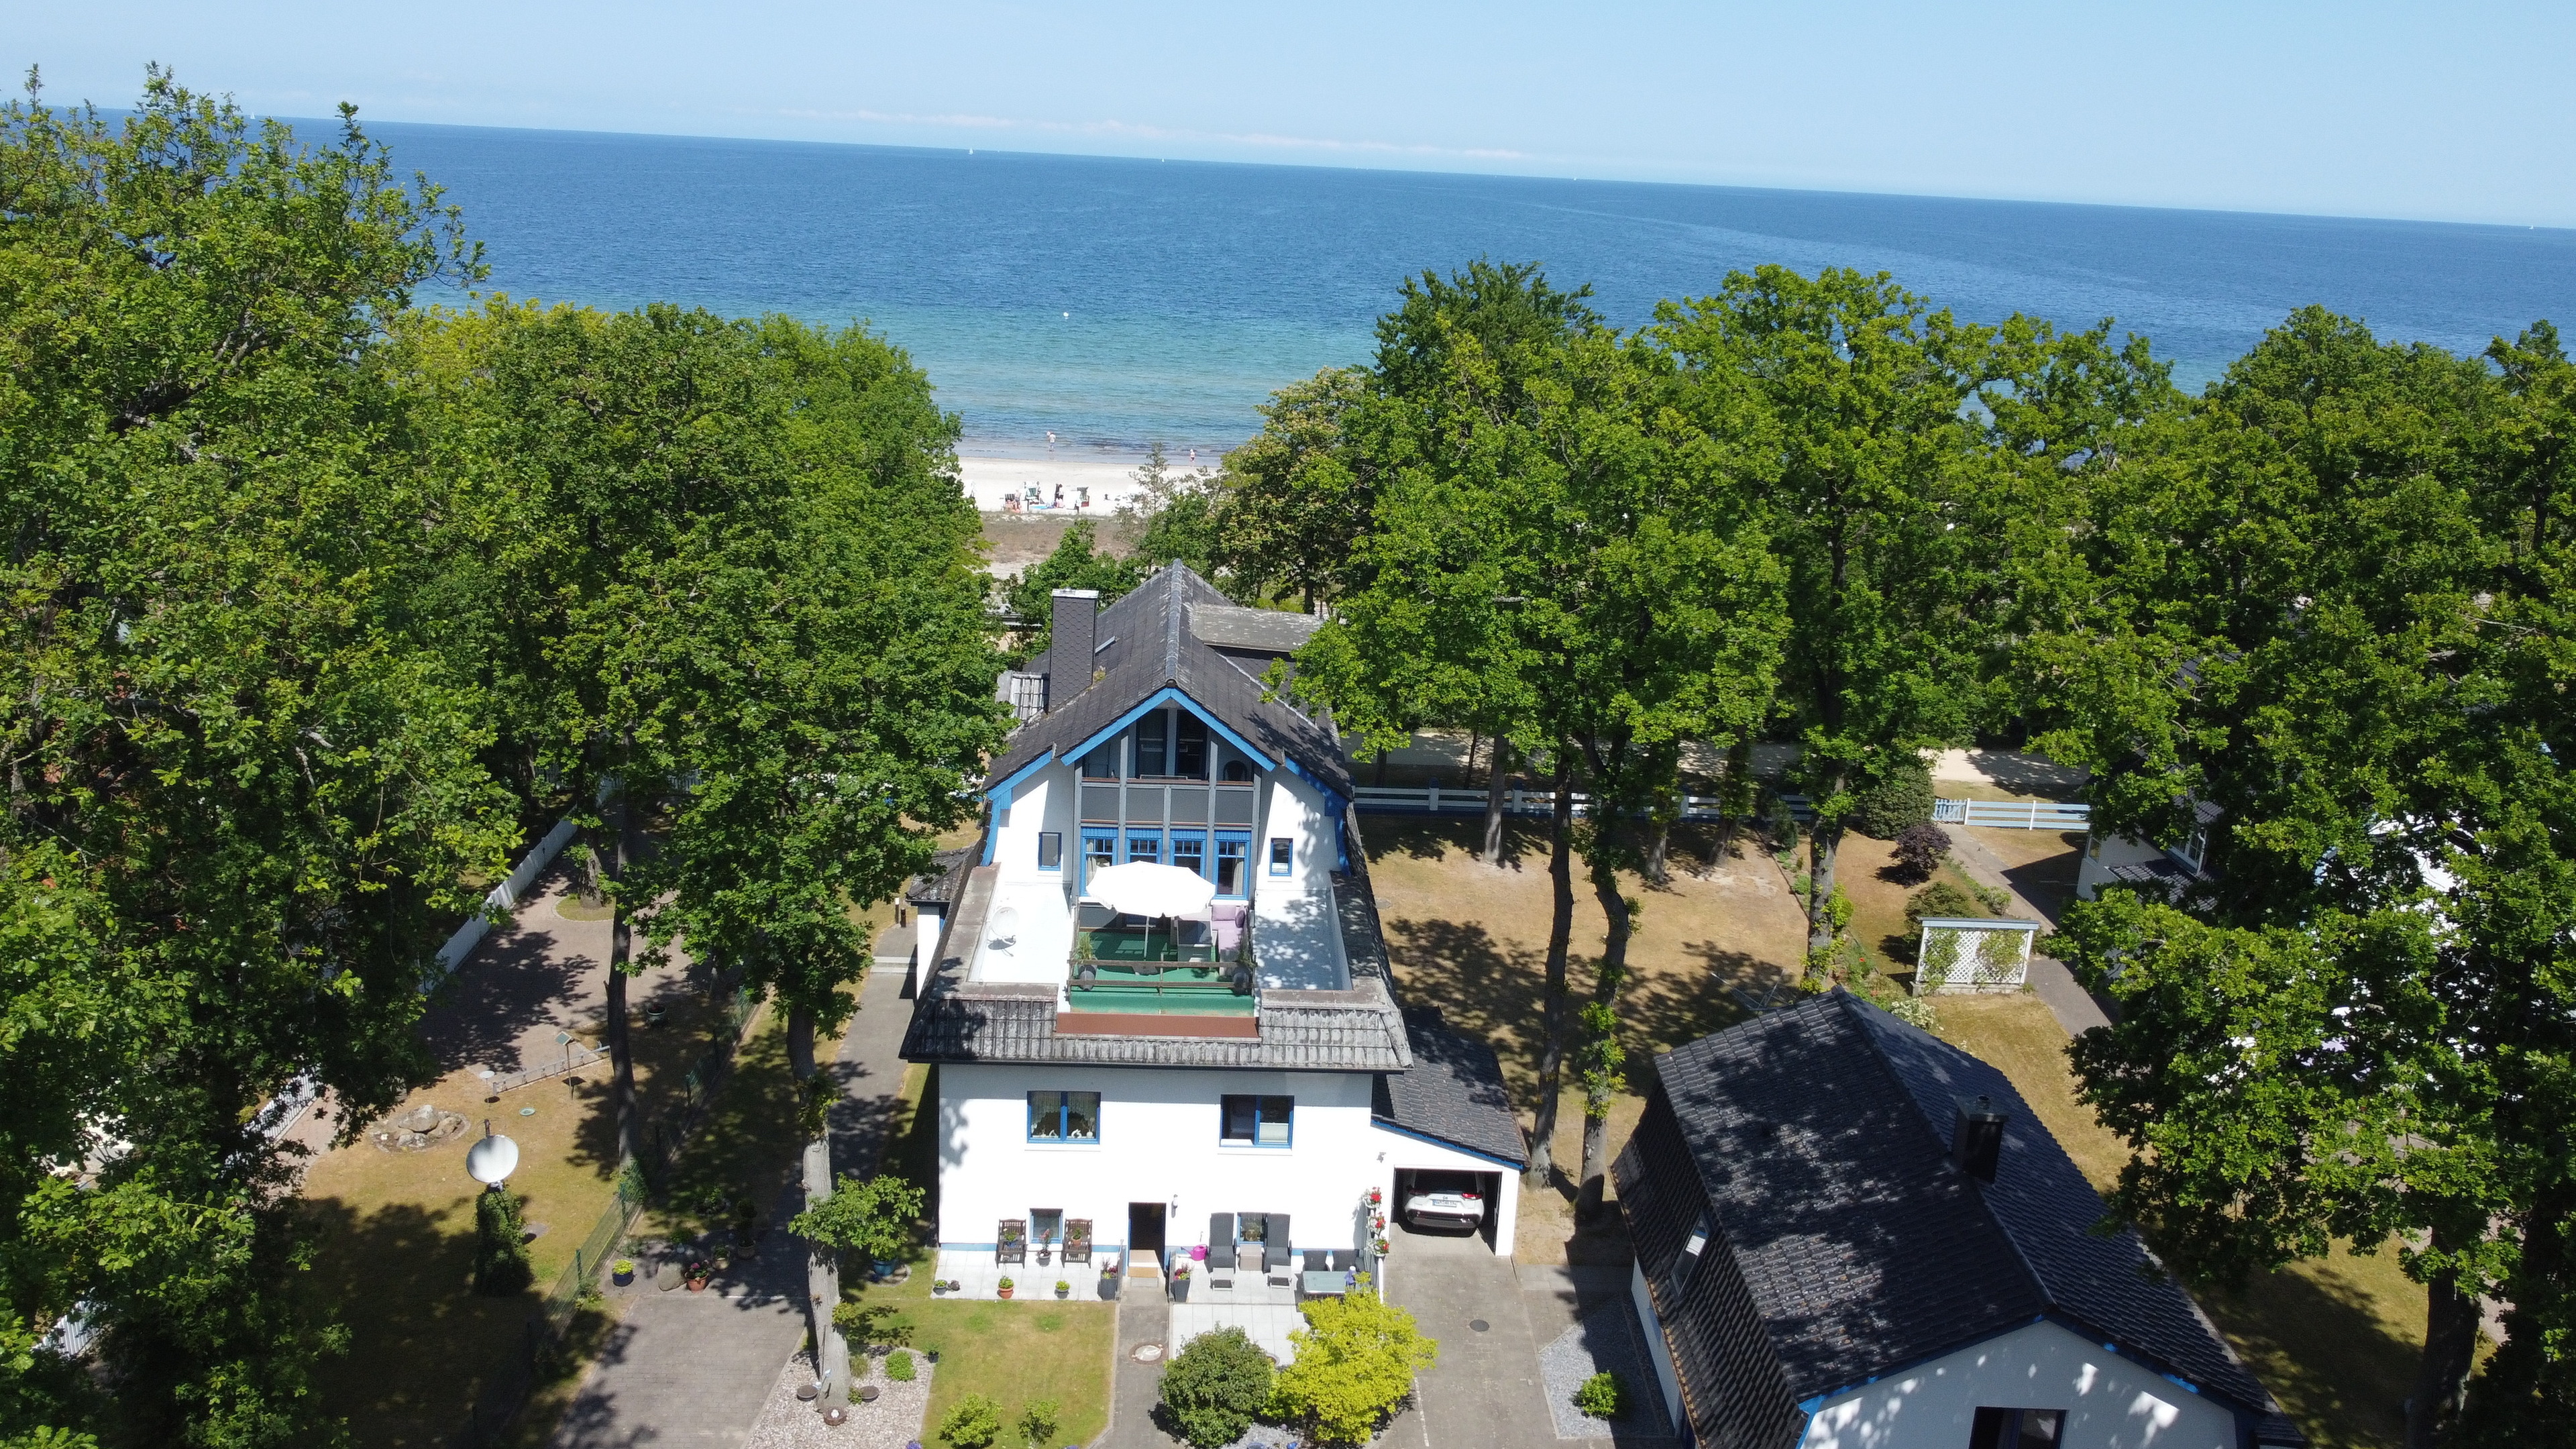 Strandhaus Seeperle, Whg. Seerose Ferienwohnung in Mecklenburg Vorpommern